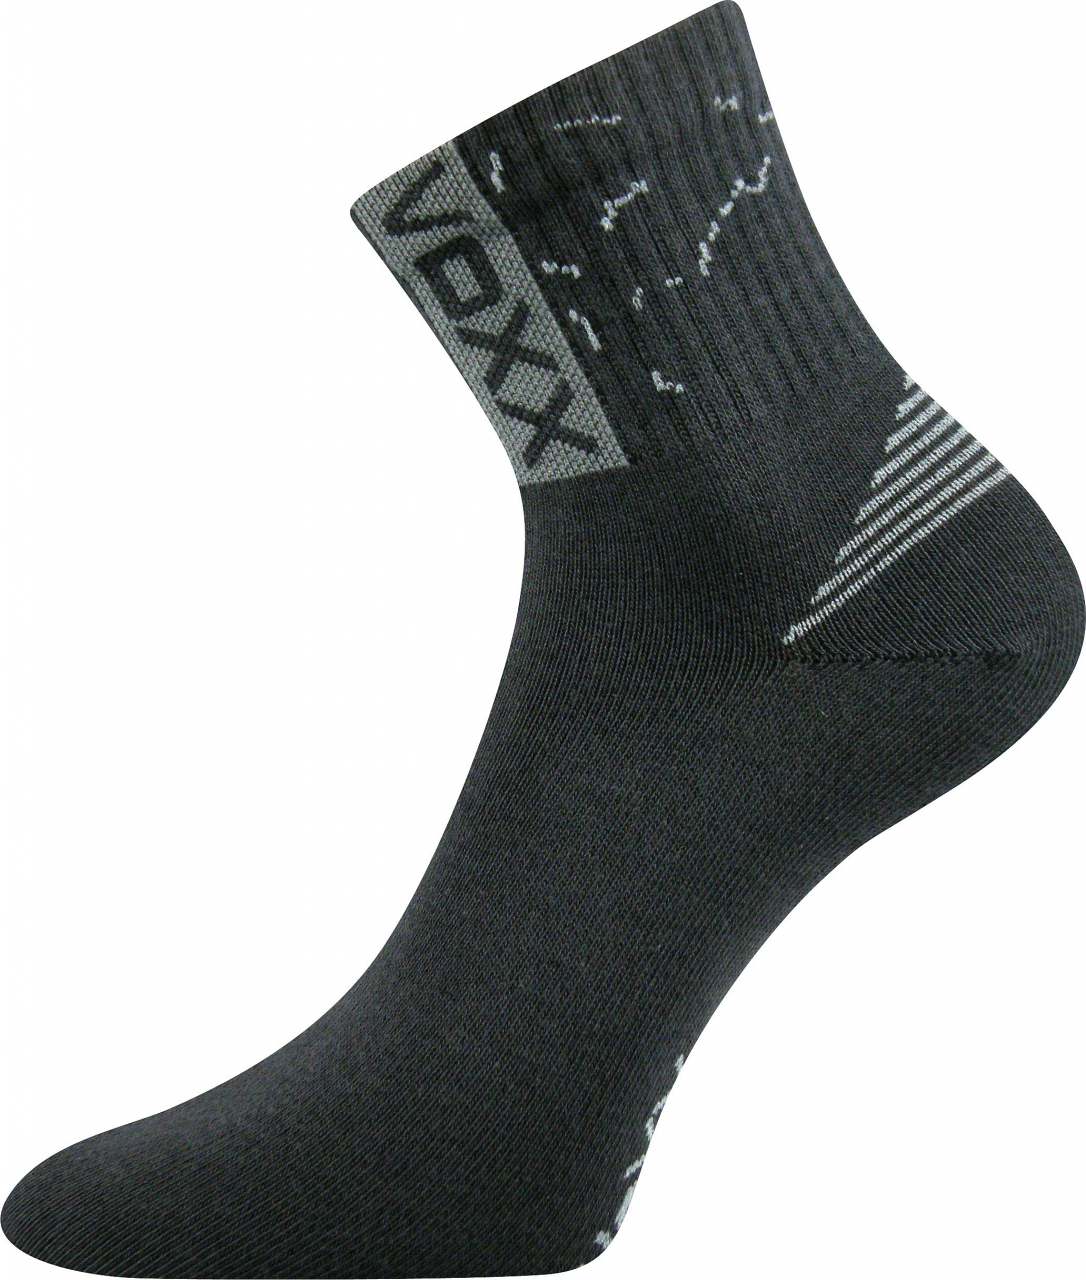 Ponožky sportovní Voxx Codex - tmavě šedé, 43-46